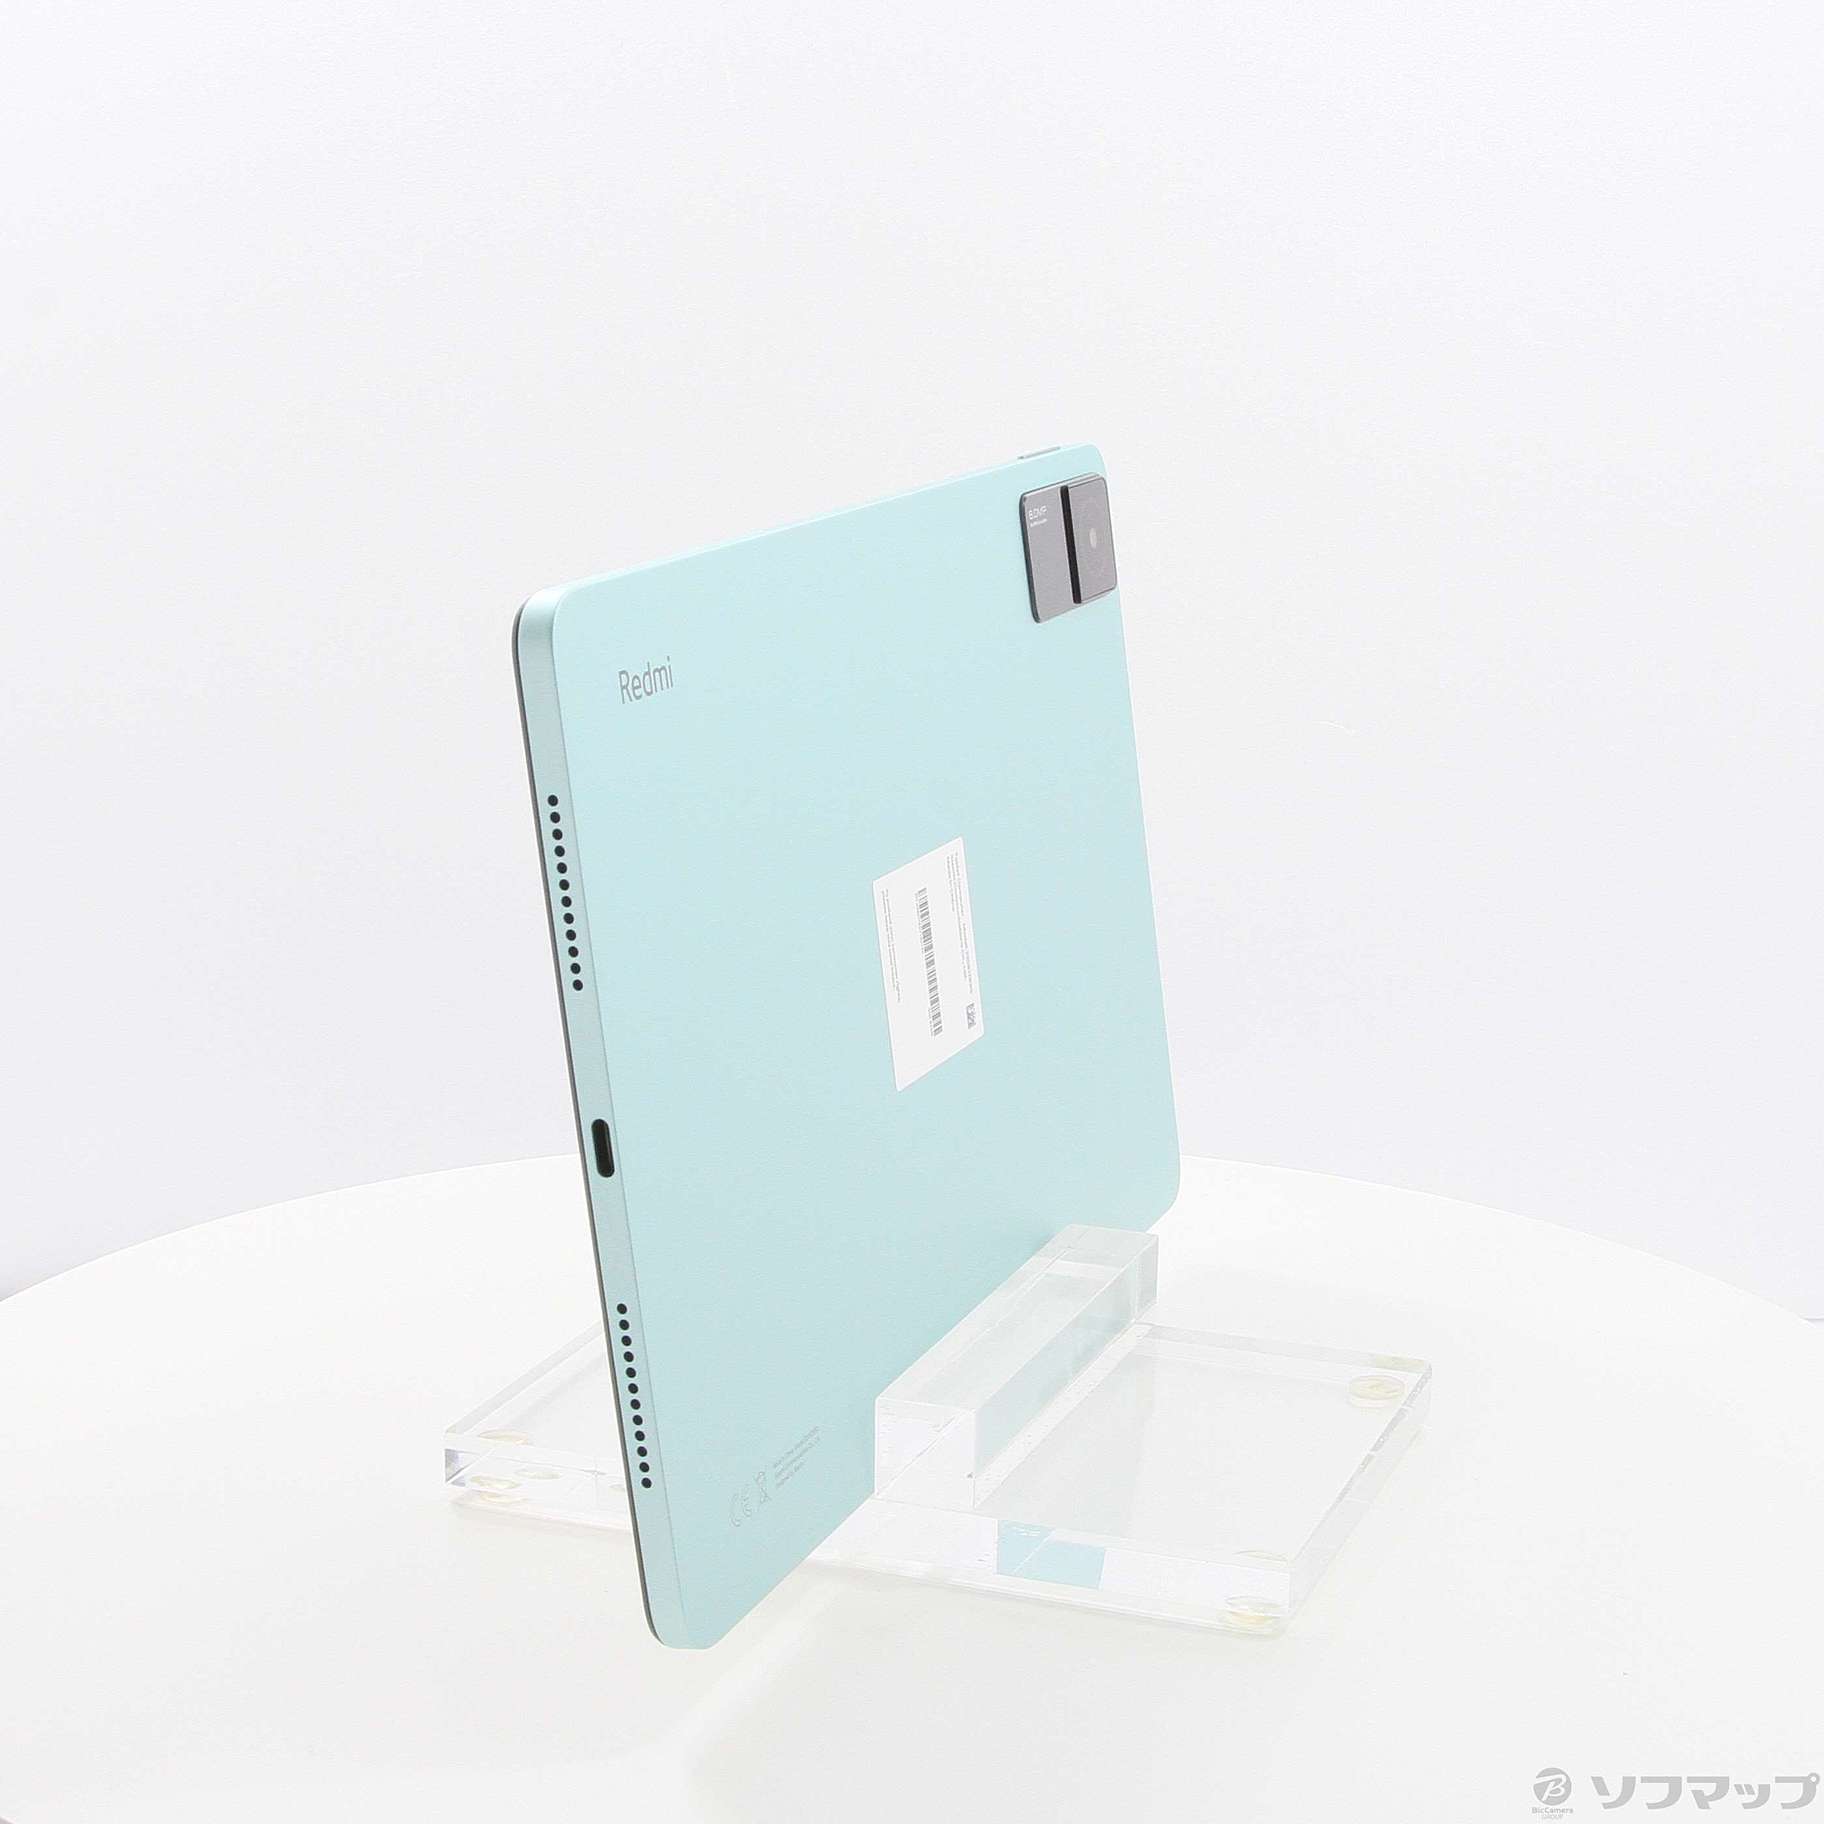 Xiaomi タブレットPC Redmi Pad 3GB+64GB [ミントグリーン] - タブレットPC